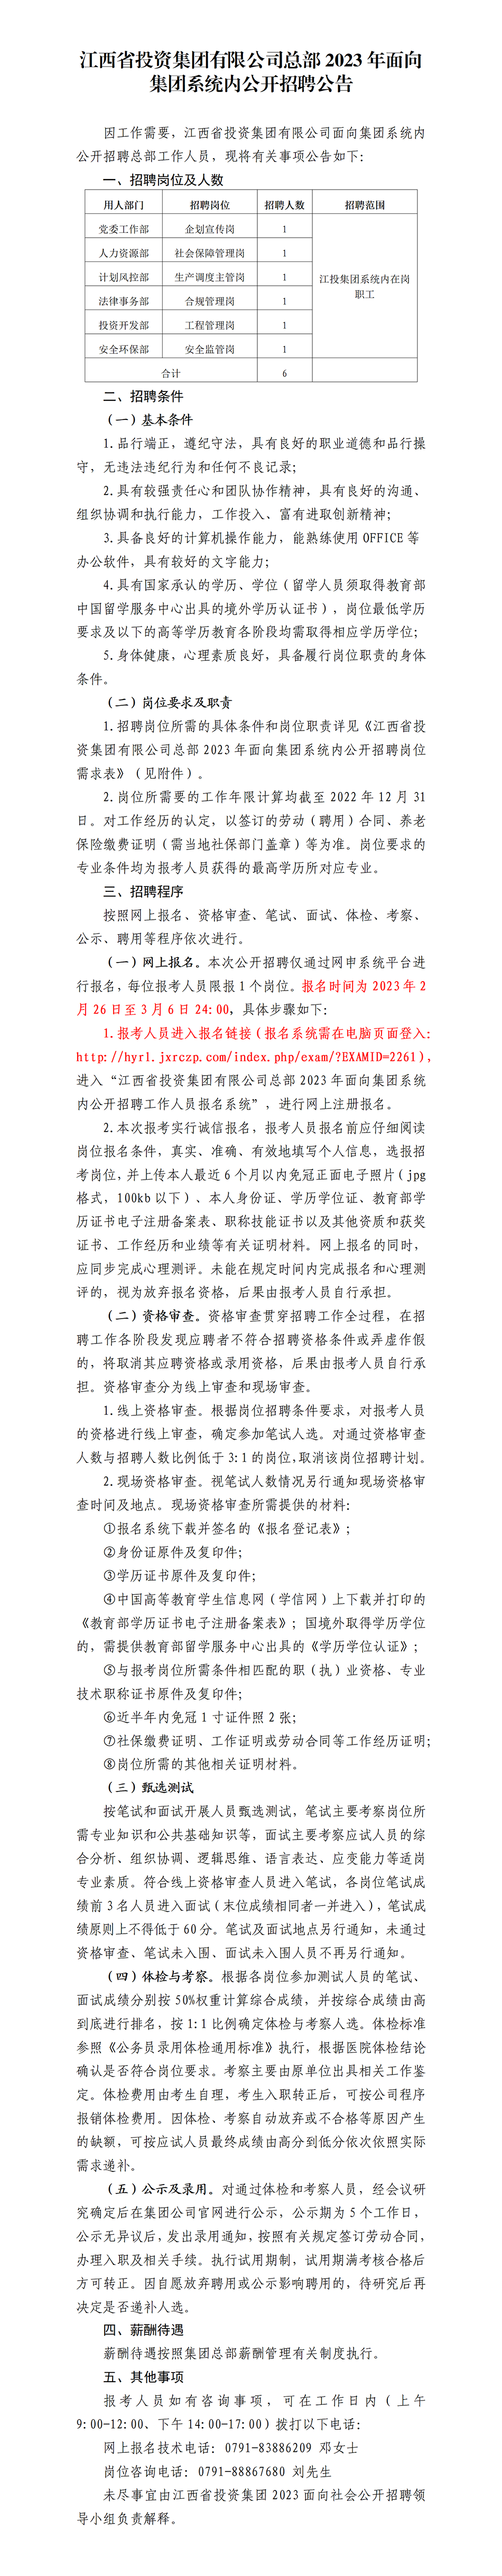 江西省投资集团有限公司总部2023年面向集团系统内公开招聘公告.png